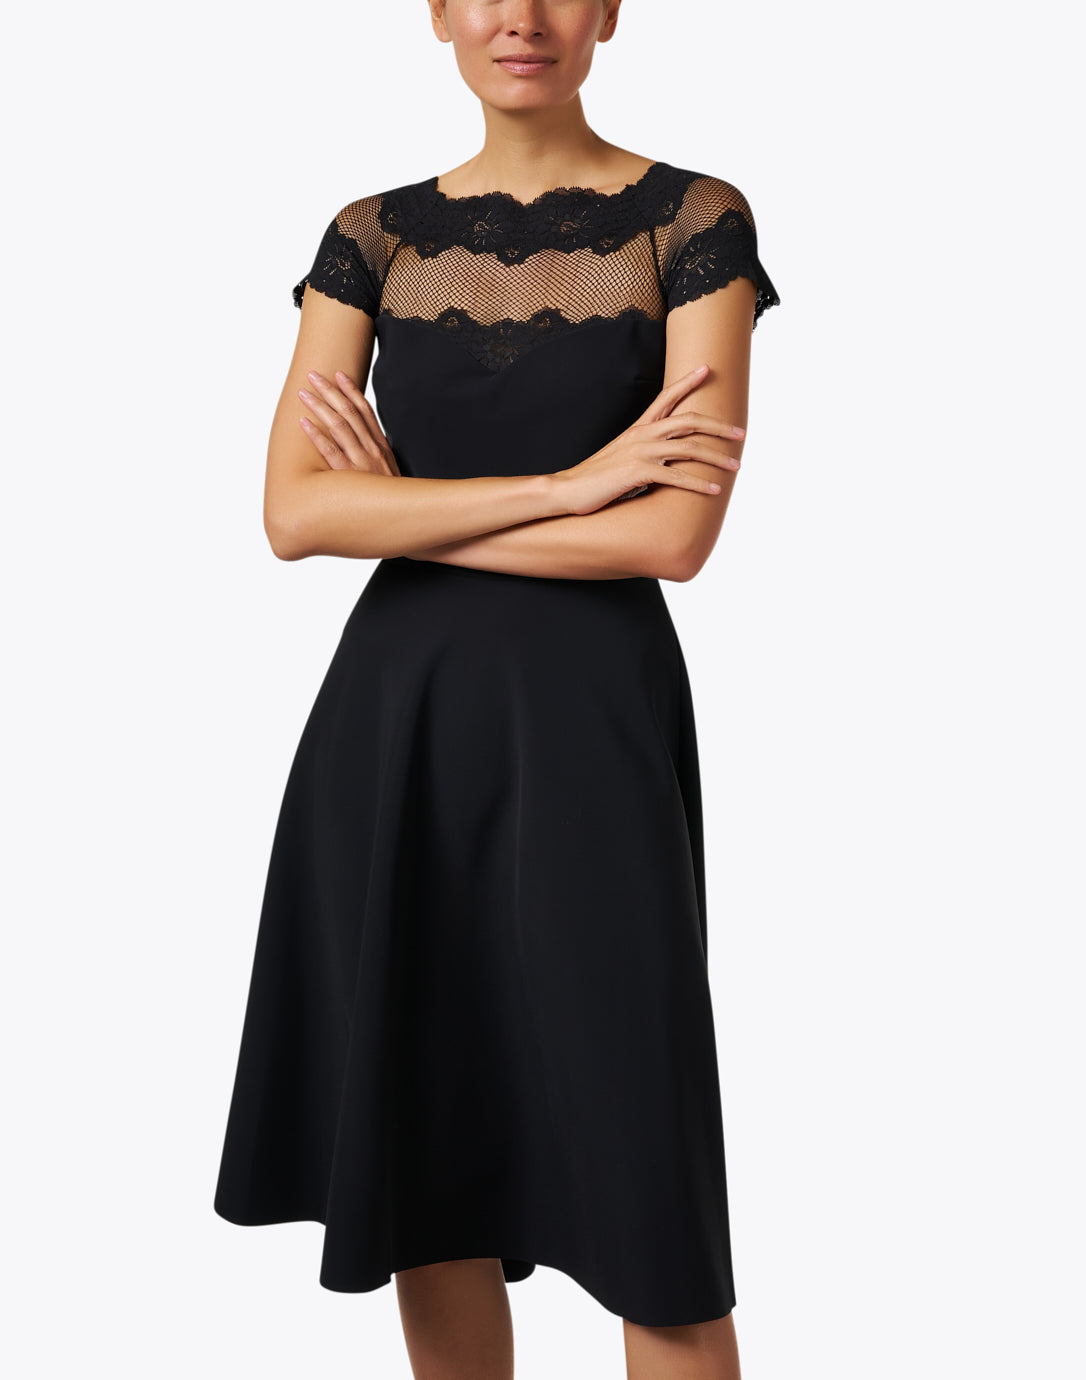 Ariba Black Lace Fit & Flare Dress